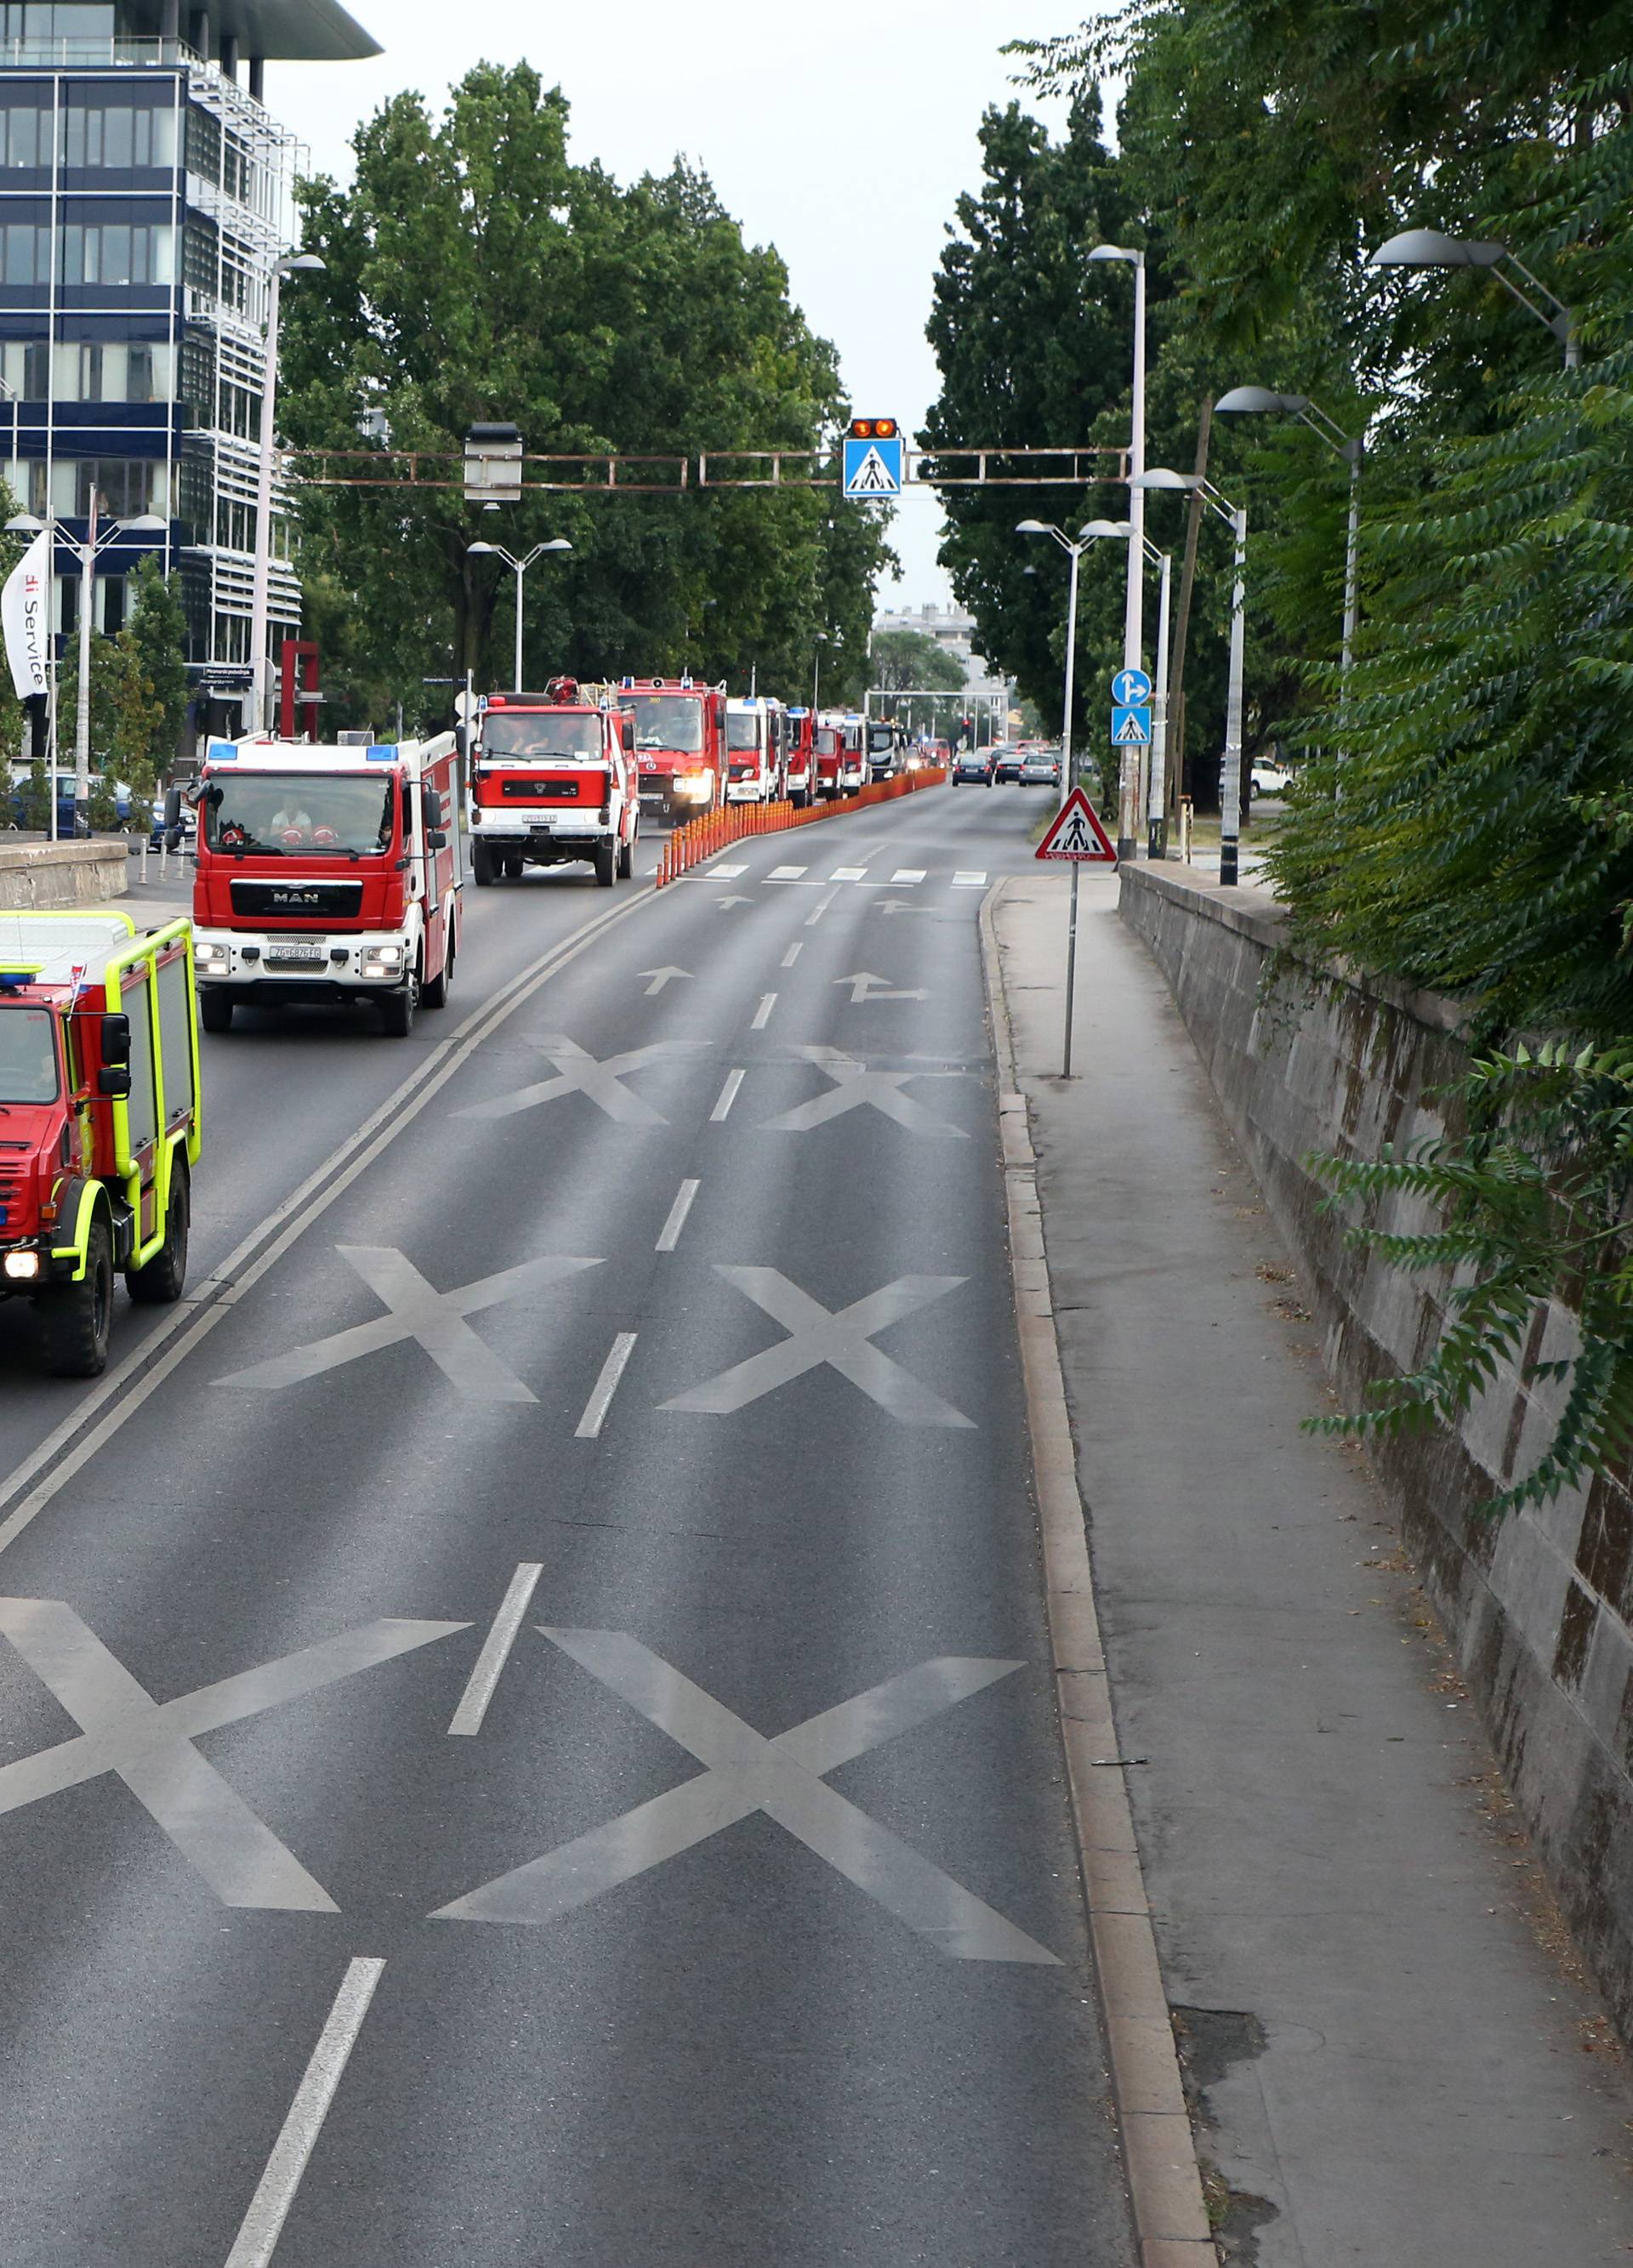 Zagrebački vatrogasci se uz zvukove sirena vratili u Savsku